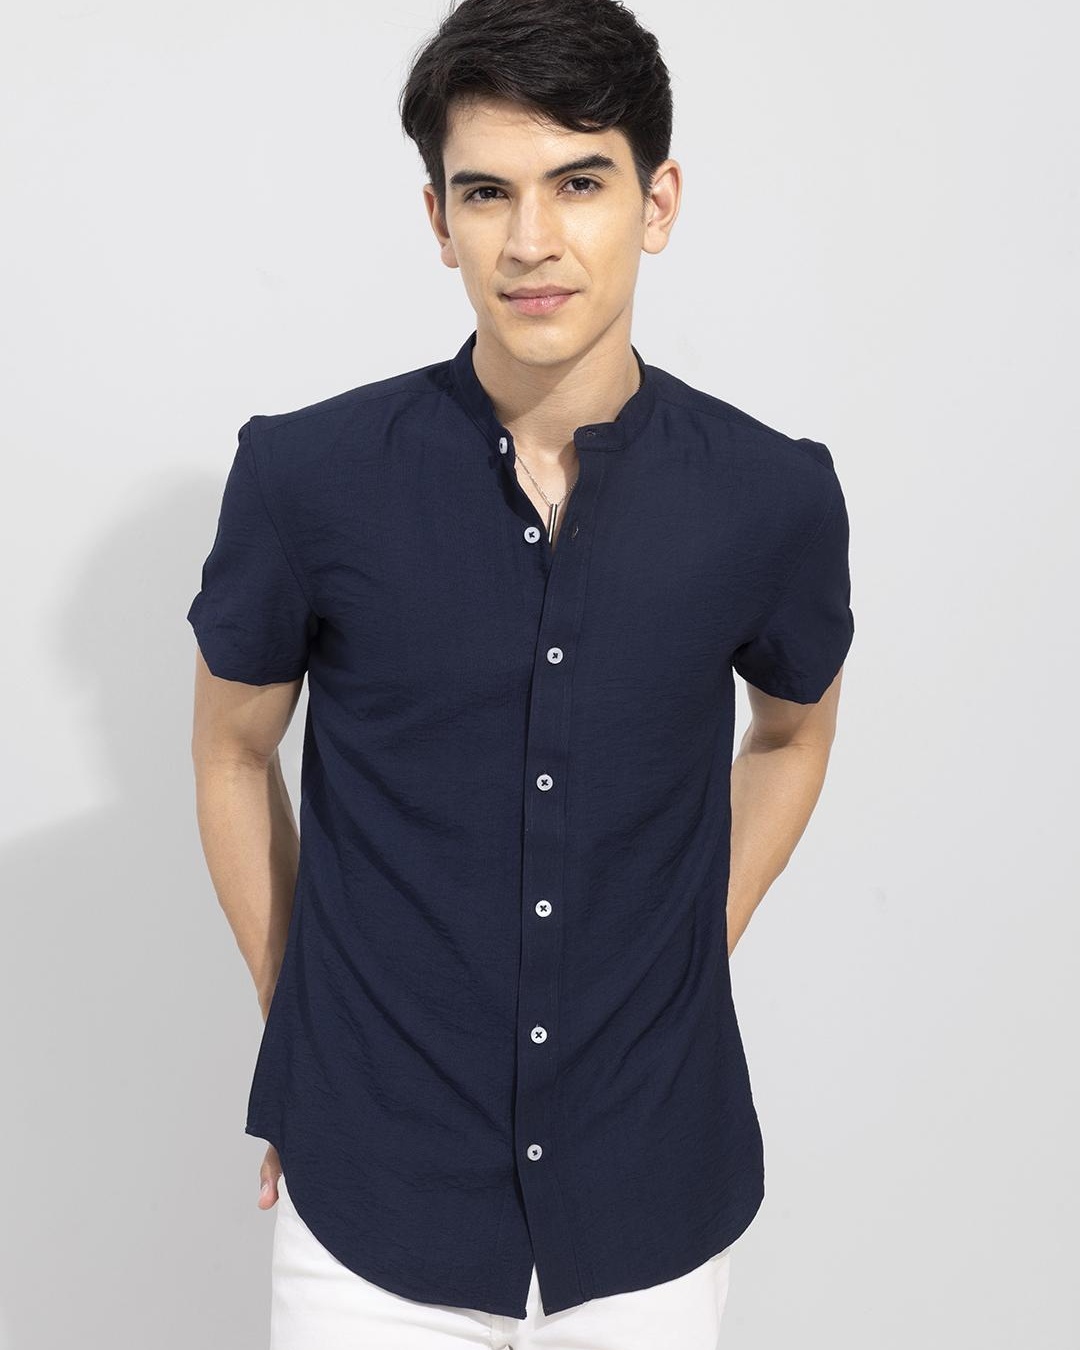 Buy Men's Blue Slim Fit Shirt Online at Bewakoof